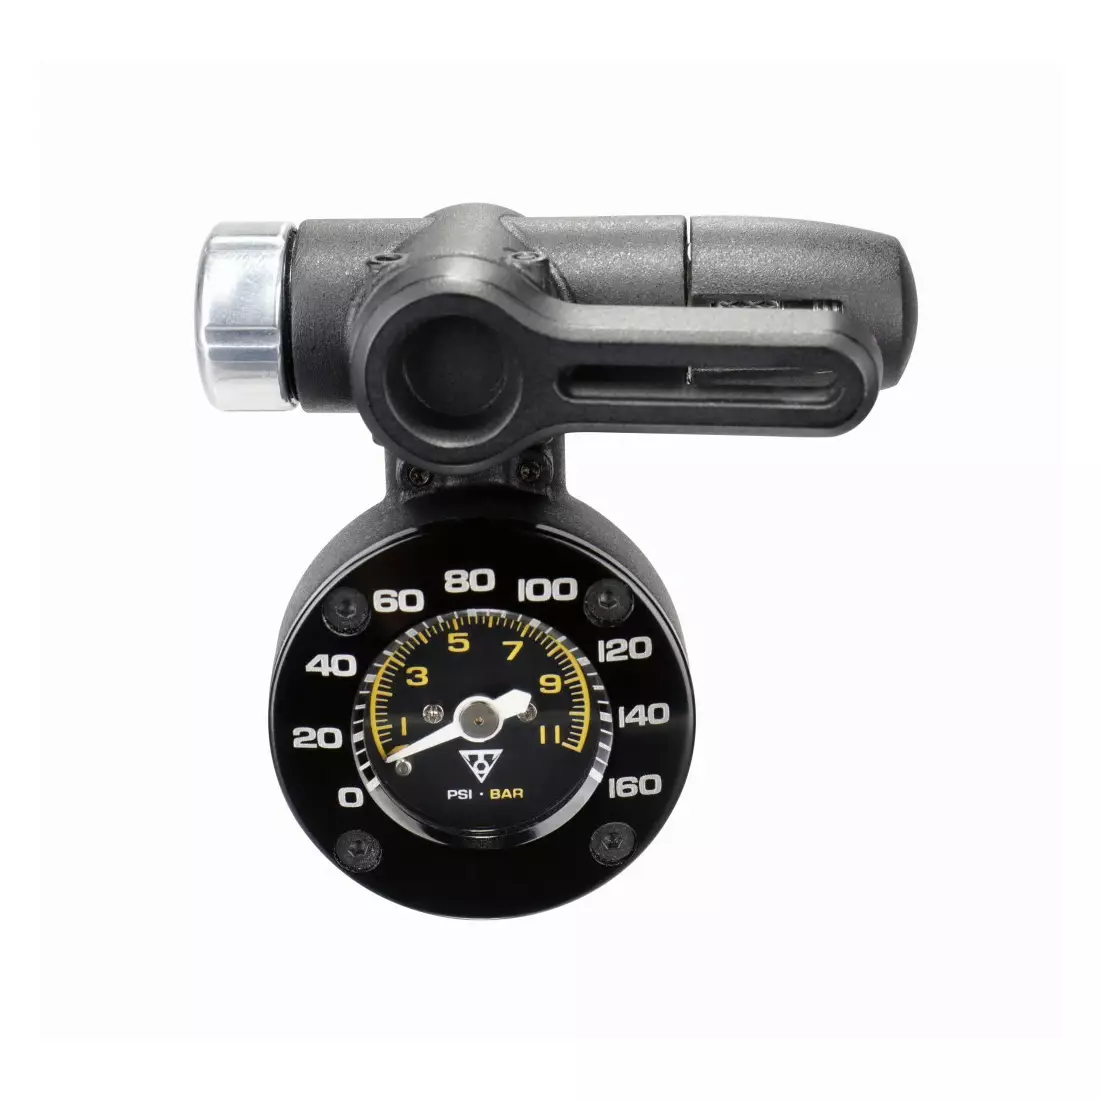 TOPEAK bicycle pump pressure gauge shuttle gauge g2 new 2020 T-TSUTG-04